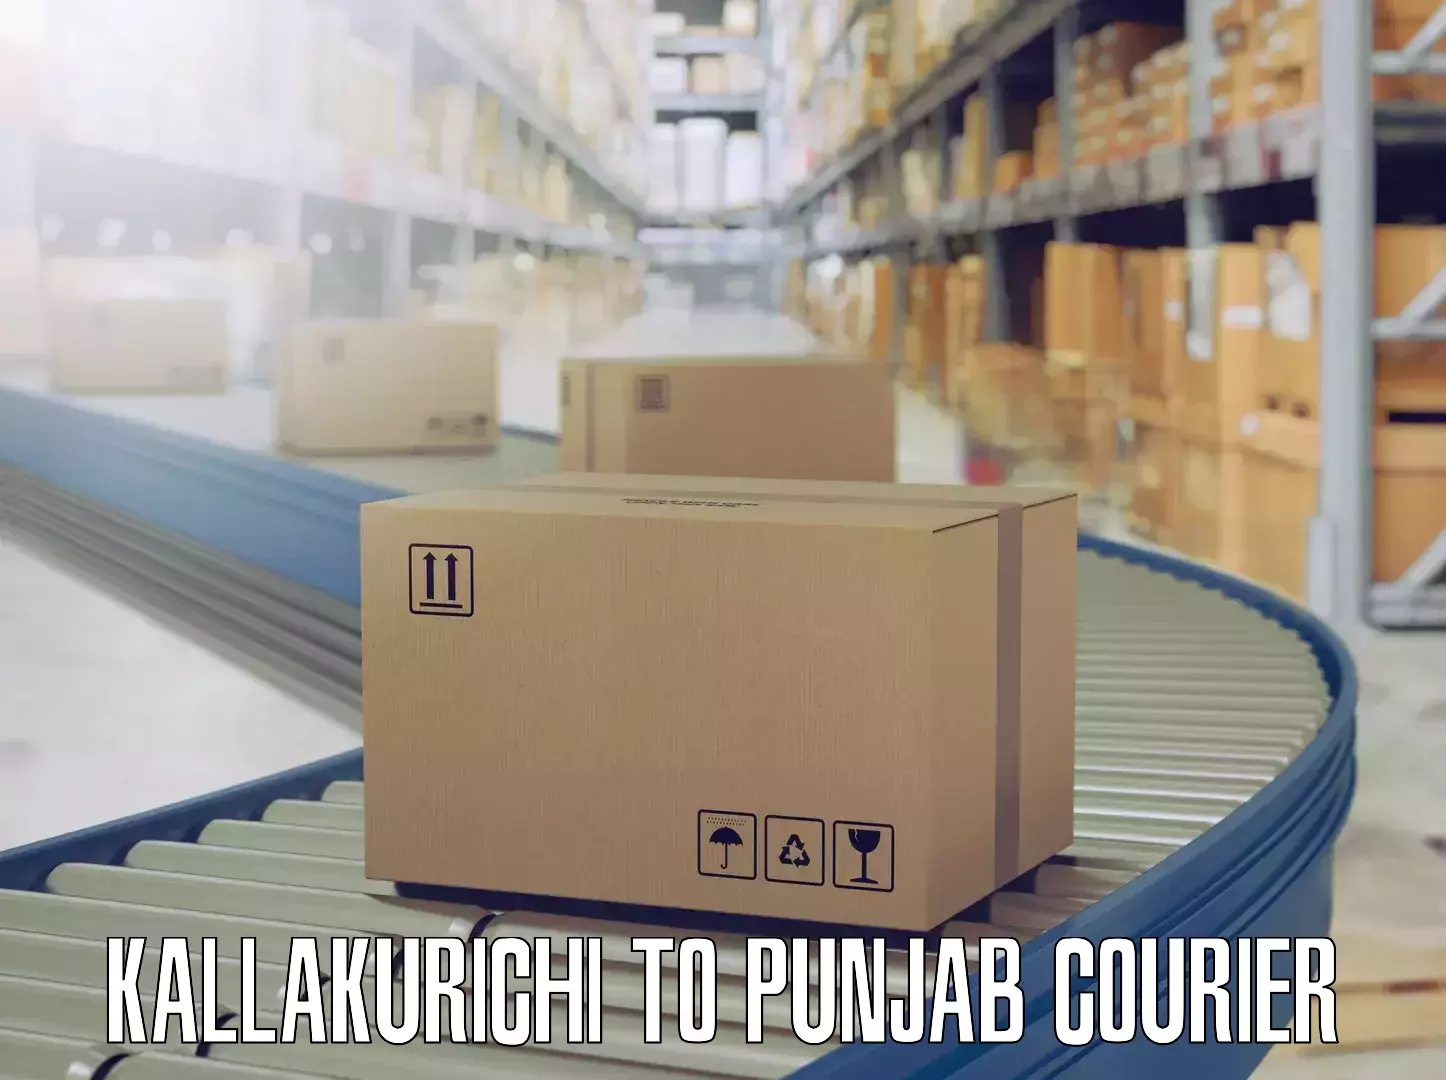 Professional furniture relocation in Kallakurichi to Punjab